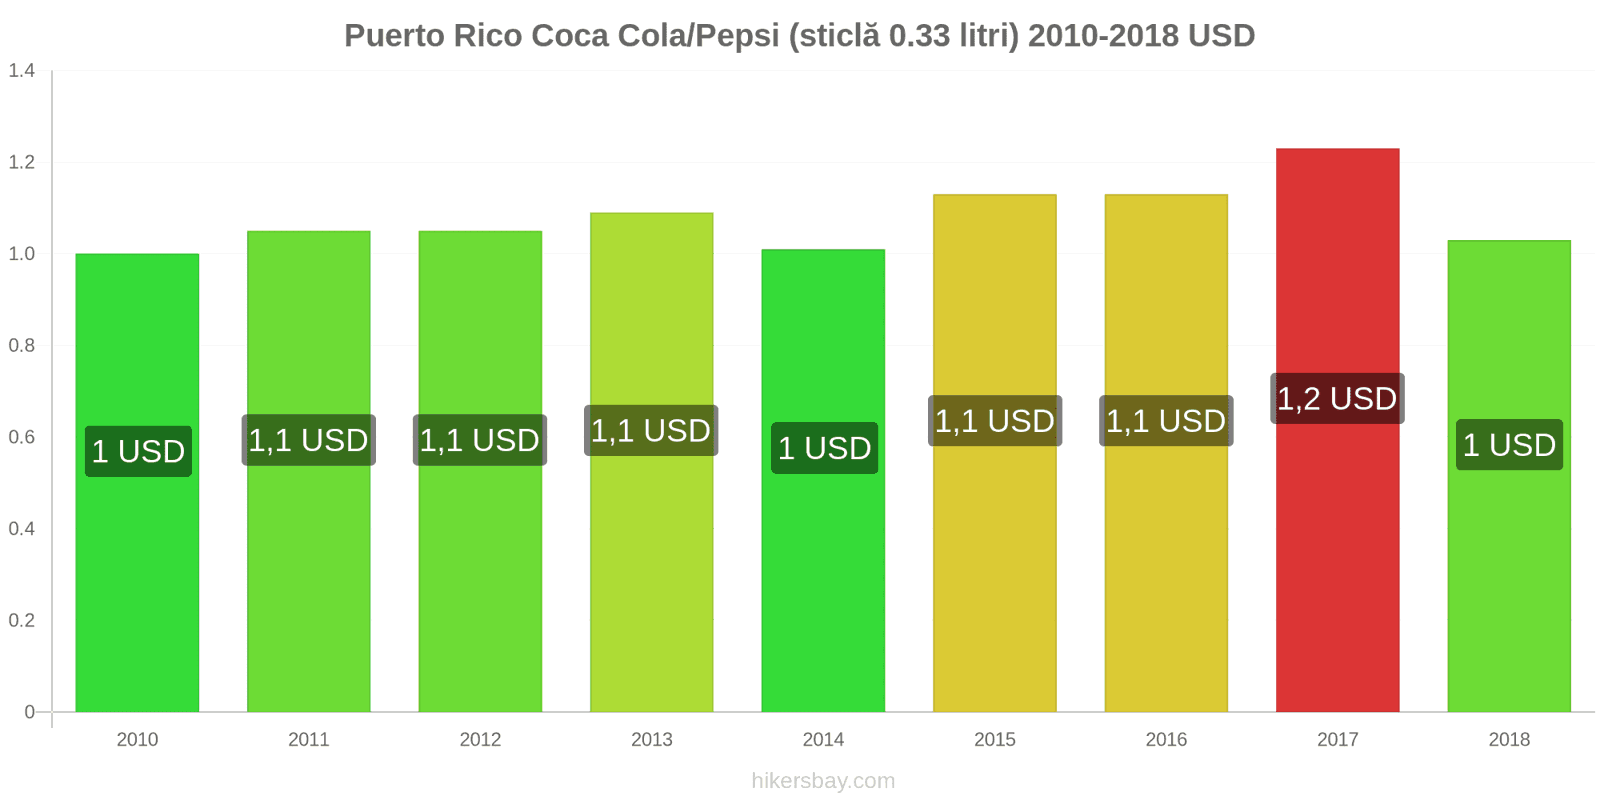 Puerto Rico schimbări de prețuri Coca-Cola/Pepsi (sticlă de 0.33 litri) hikersbay.com